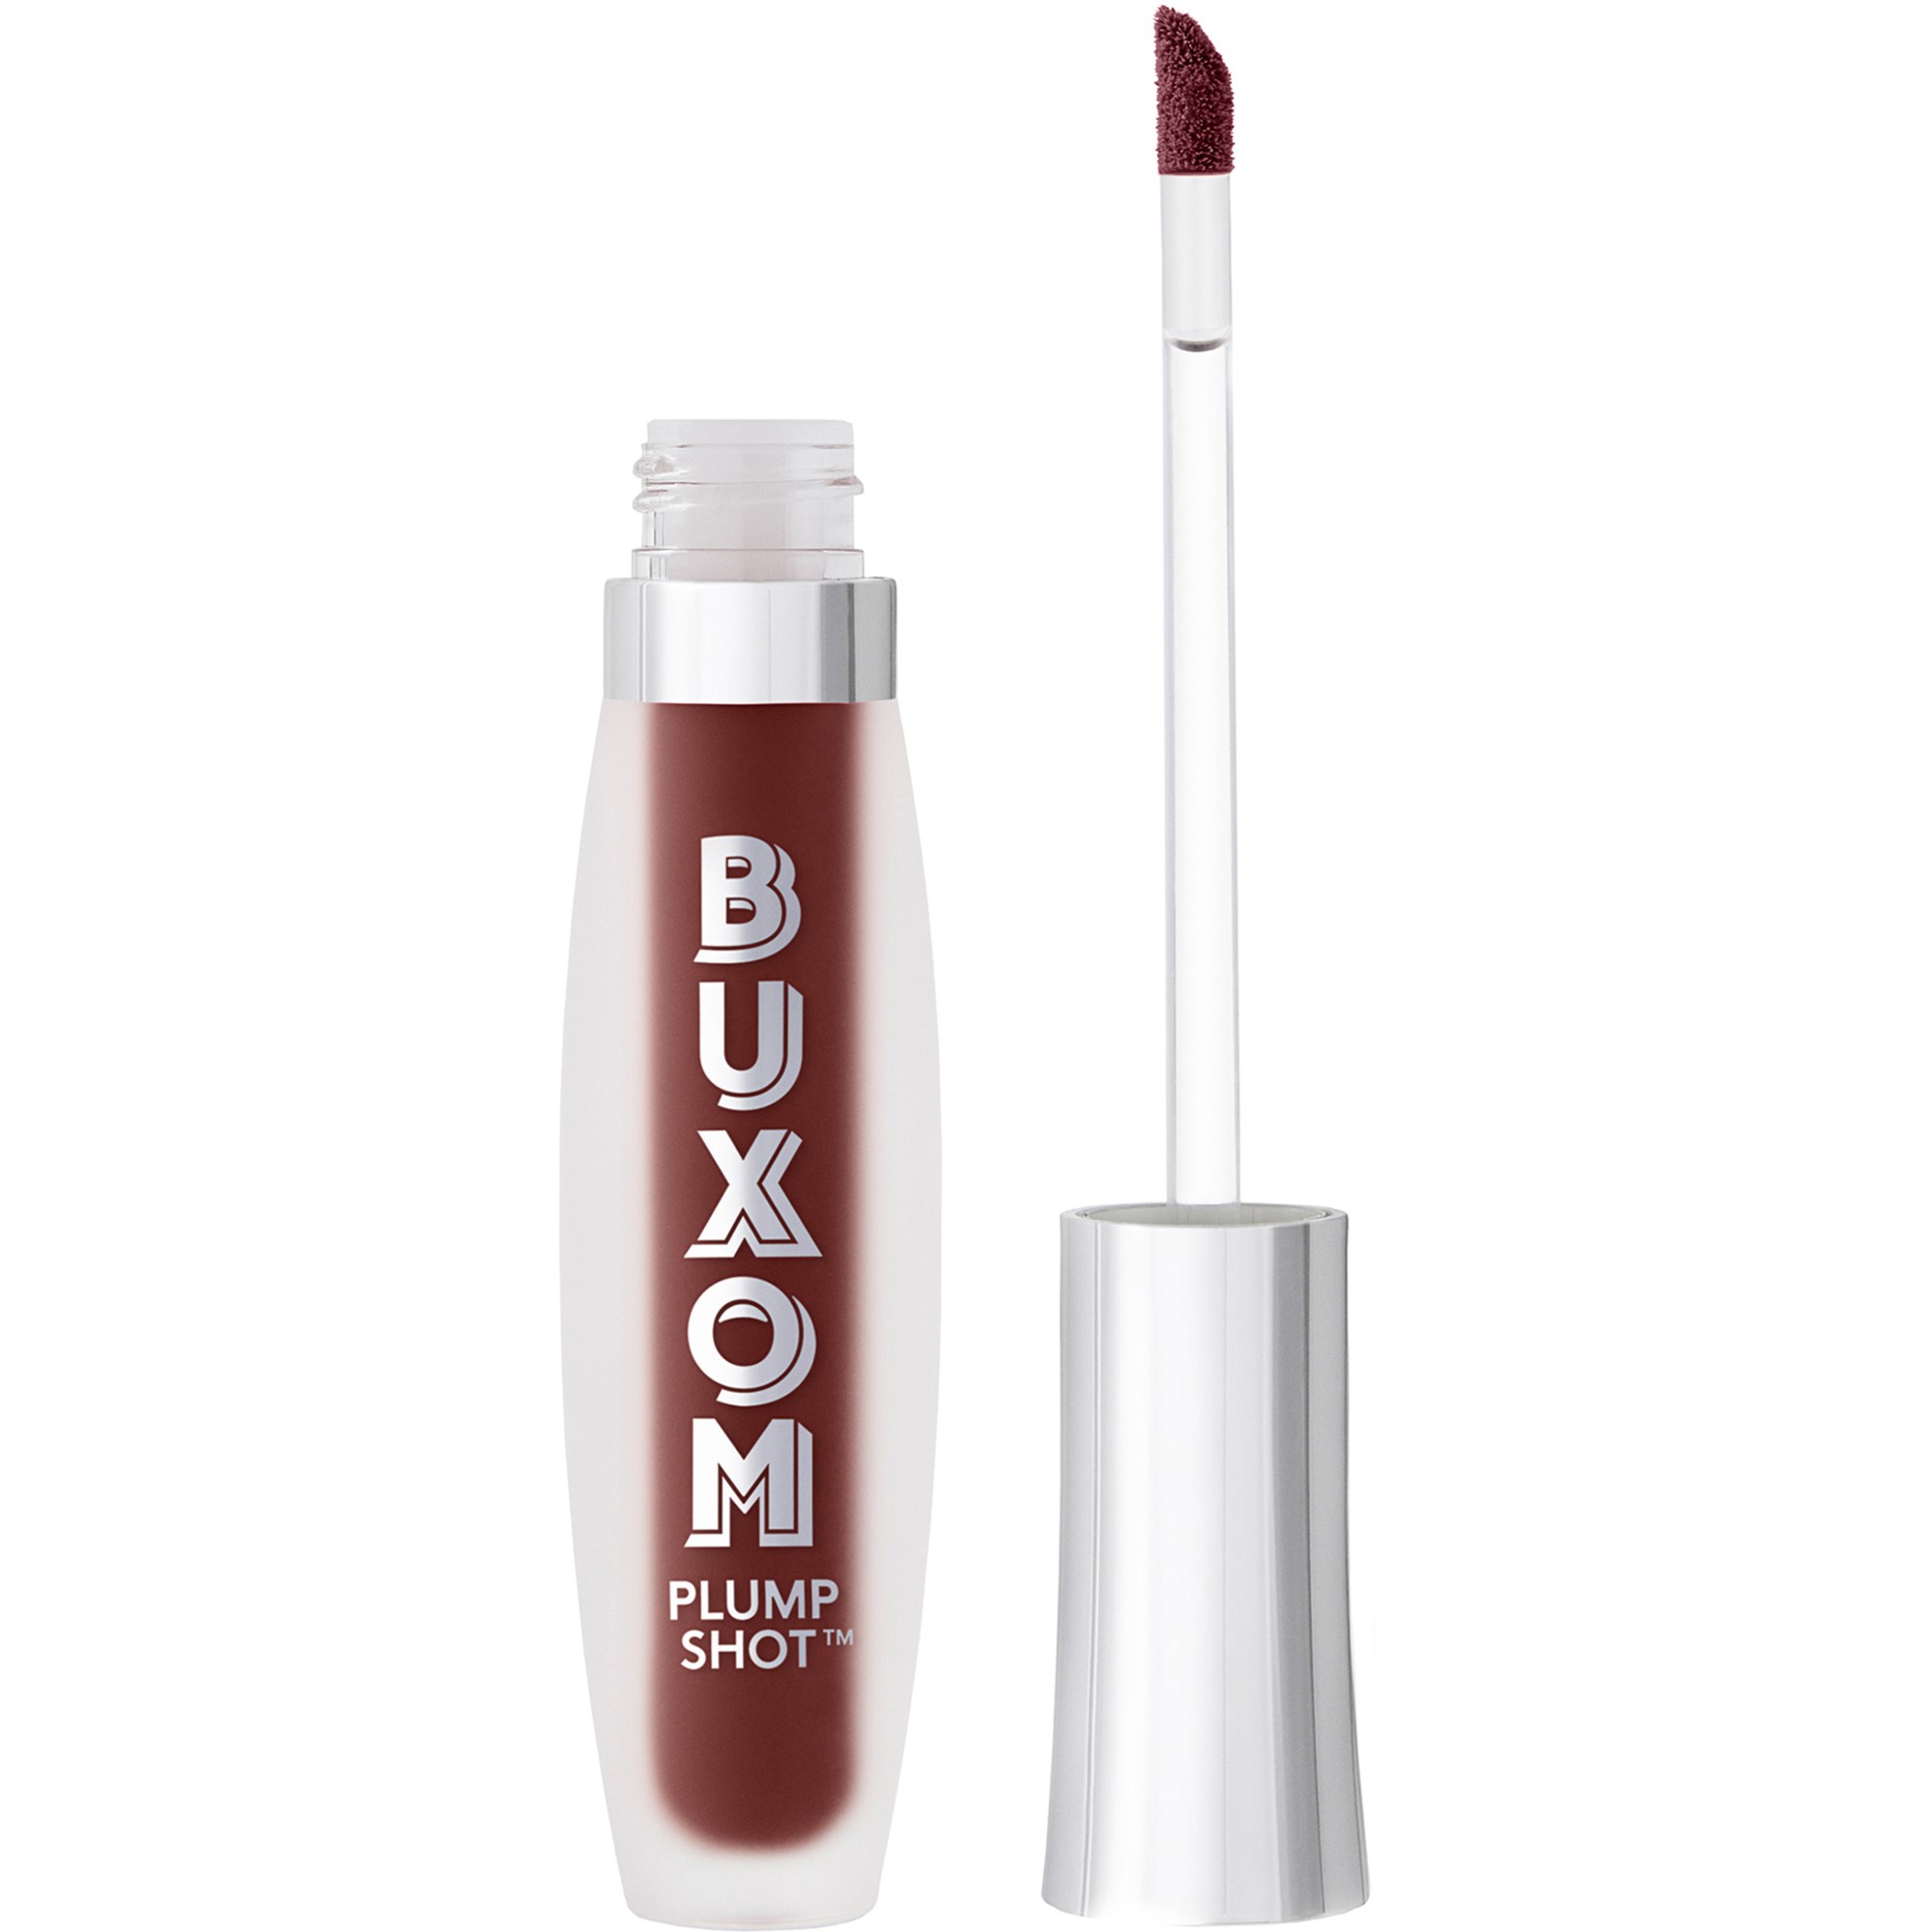 Bilde av Buxom Plump Shot™ Collagen-infused Lip Serum Wine Obsession